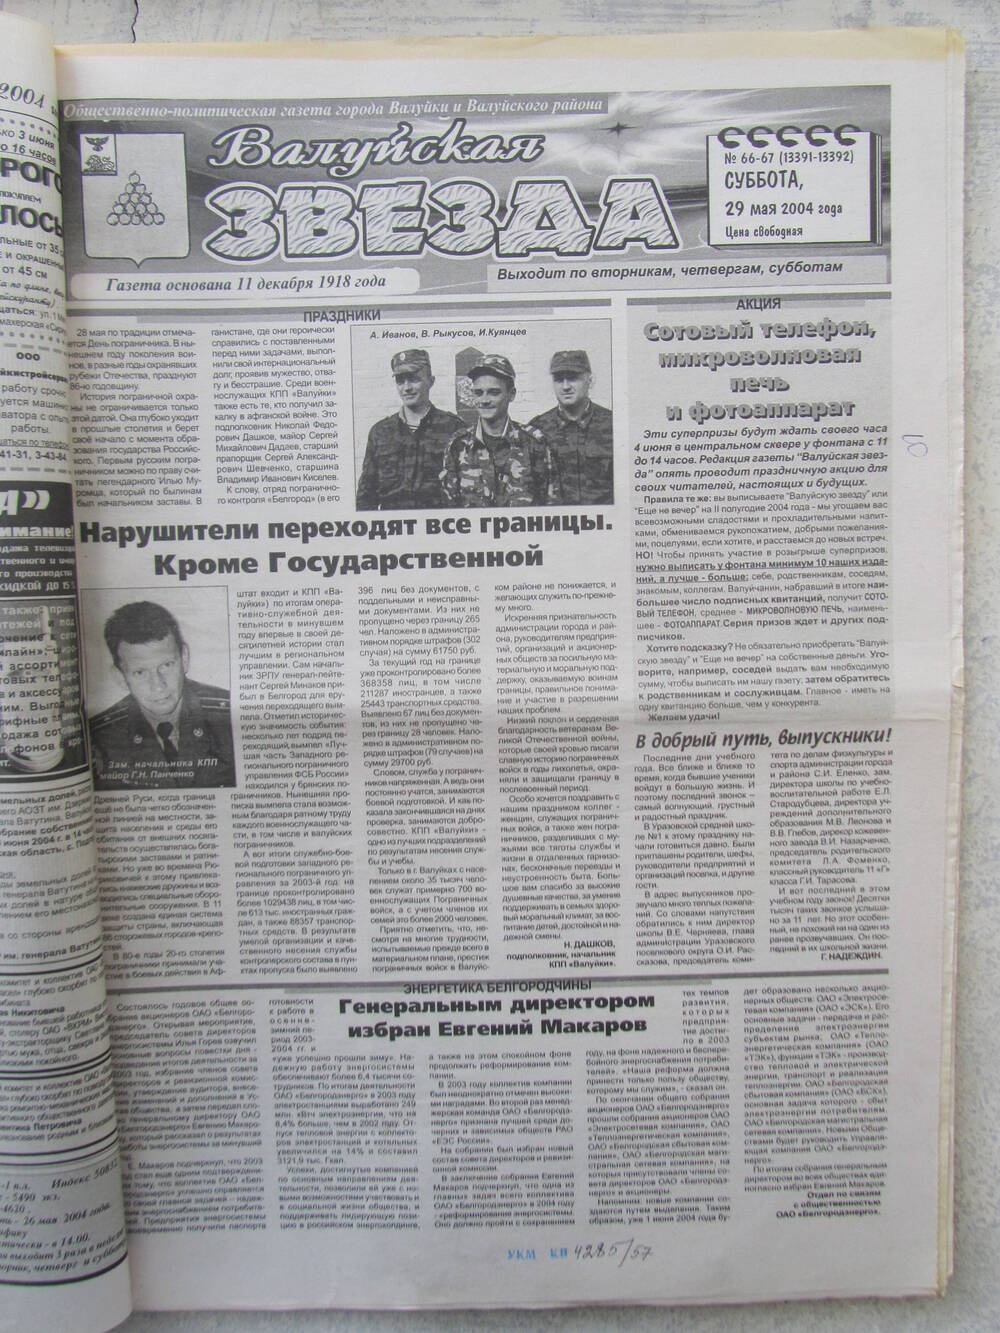 Газета Валуйская звезда №66-67 от 29.05.2004 г